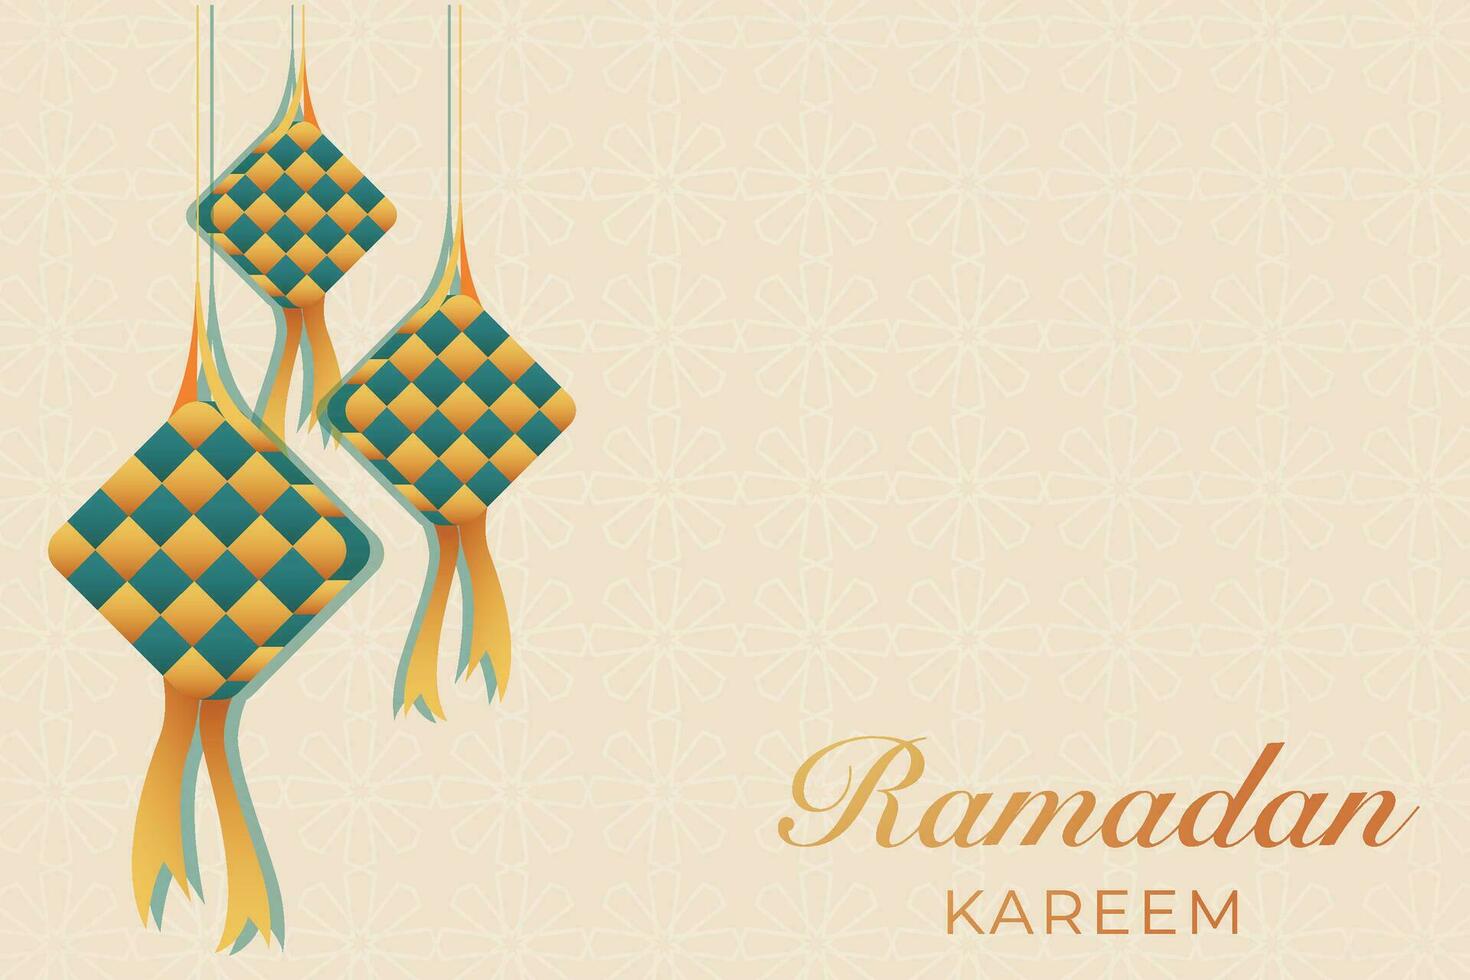 Ramadan kareem groet kaart met hangende lantaarns vector